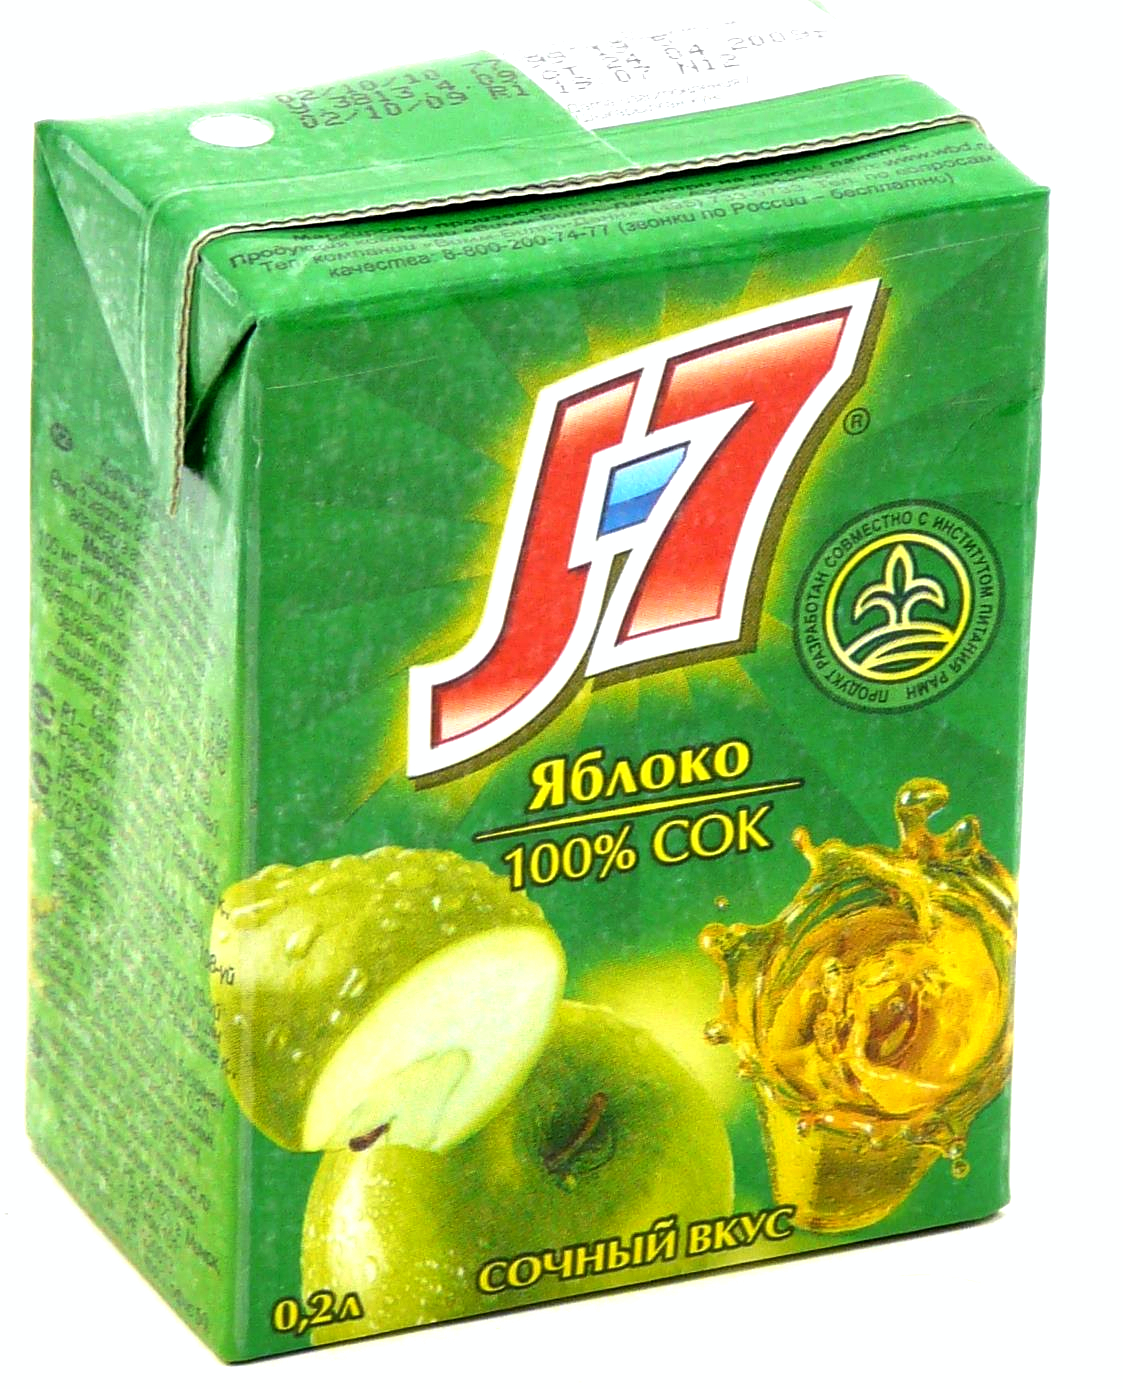 Сок J7 зеленое яблоко